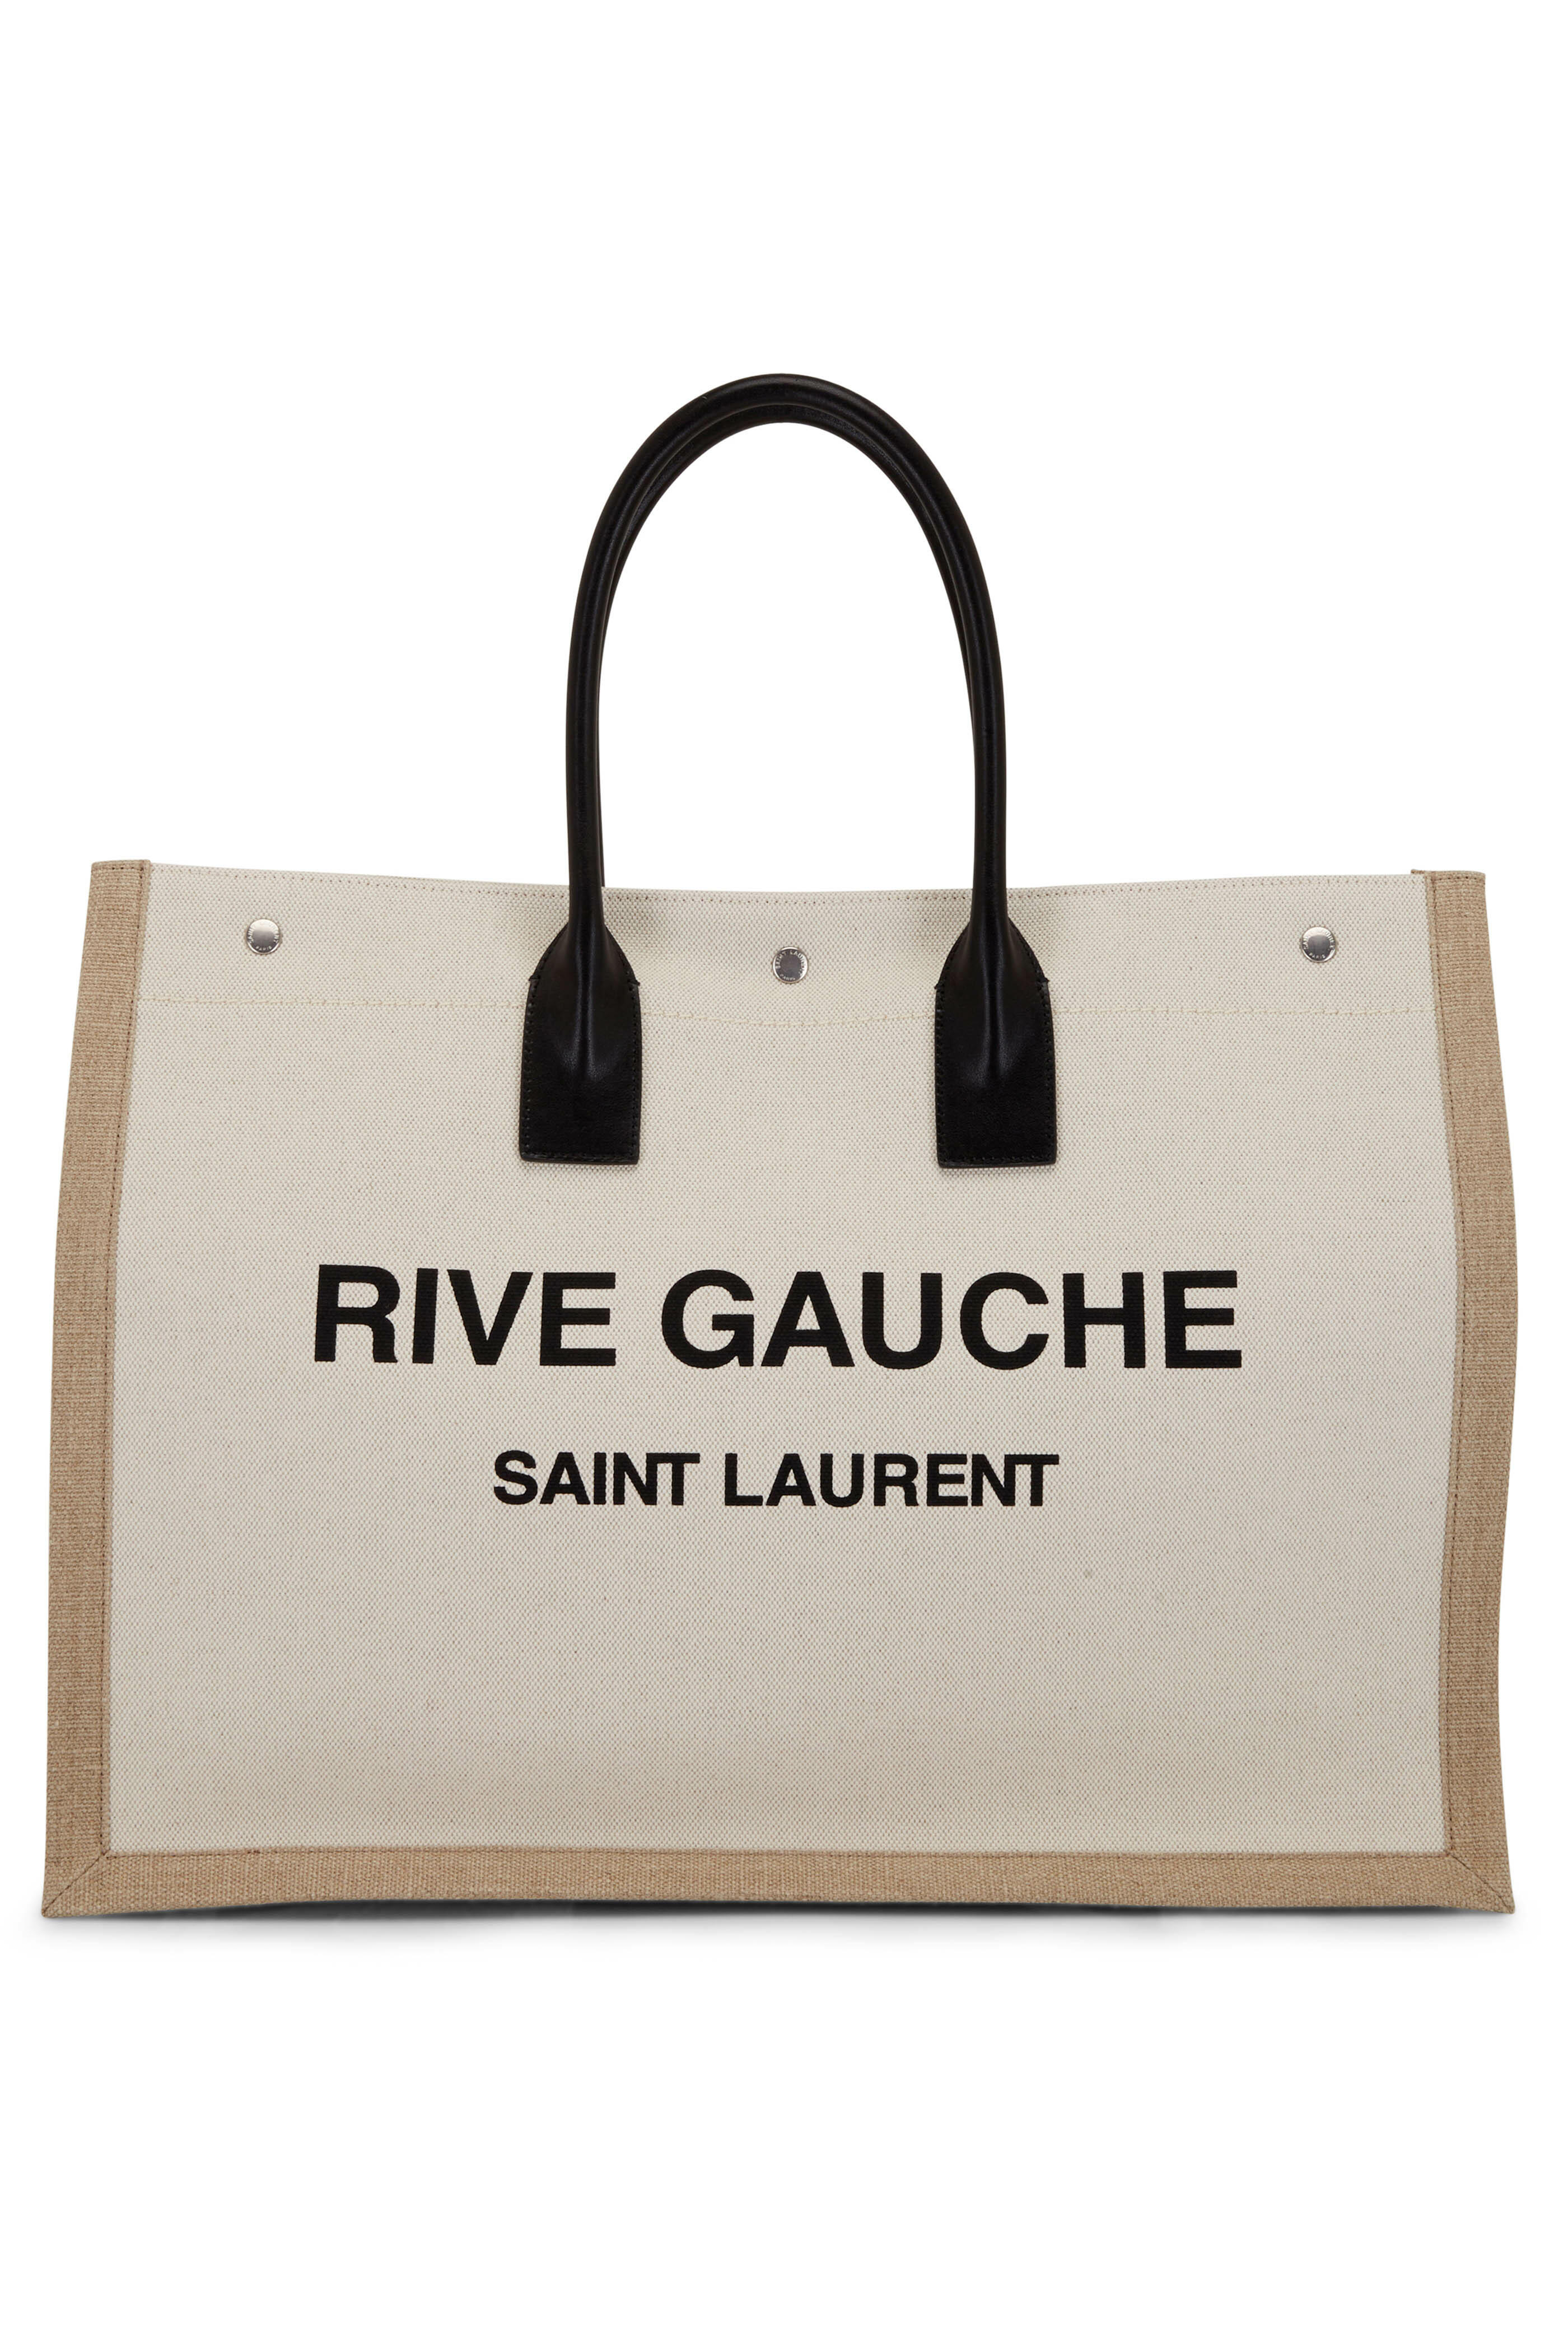 SAINT LAURENT RIVE GAUCHE TOTE REVIEW *best size!! 